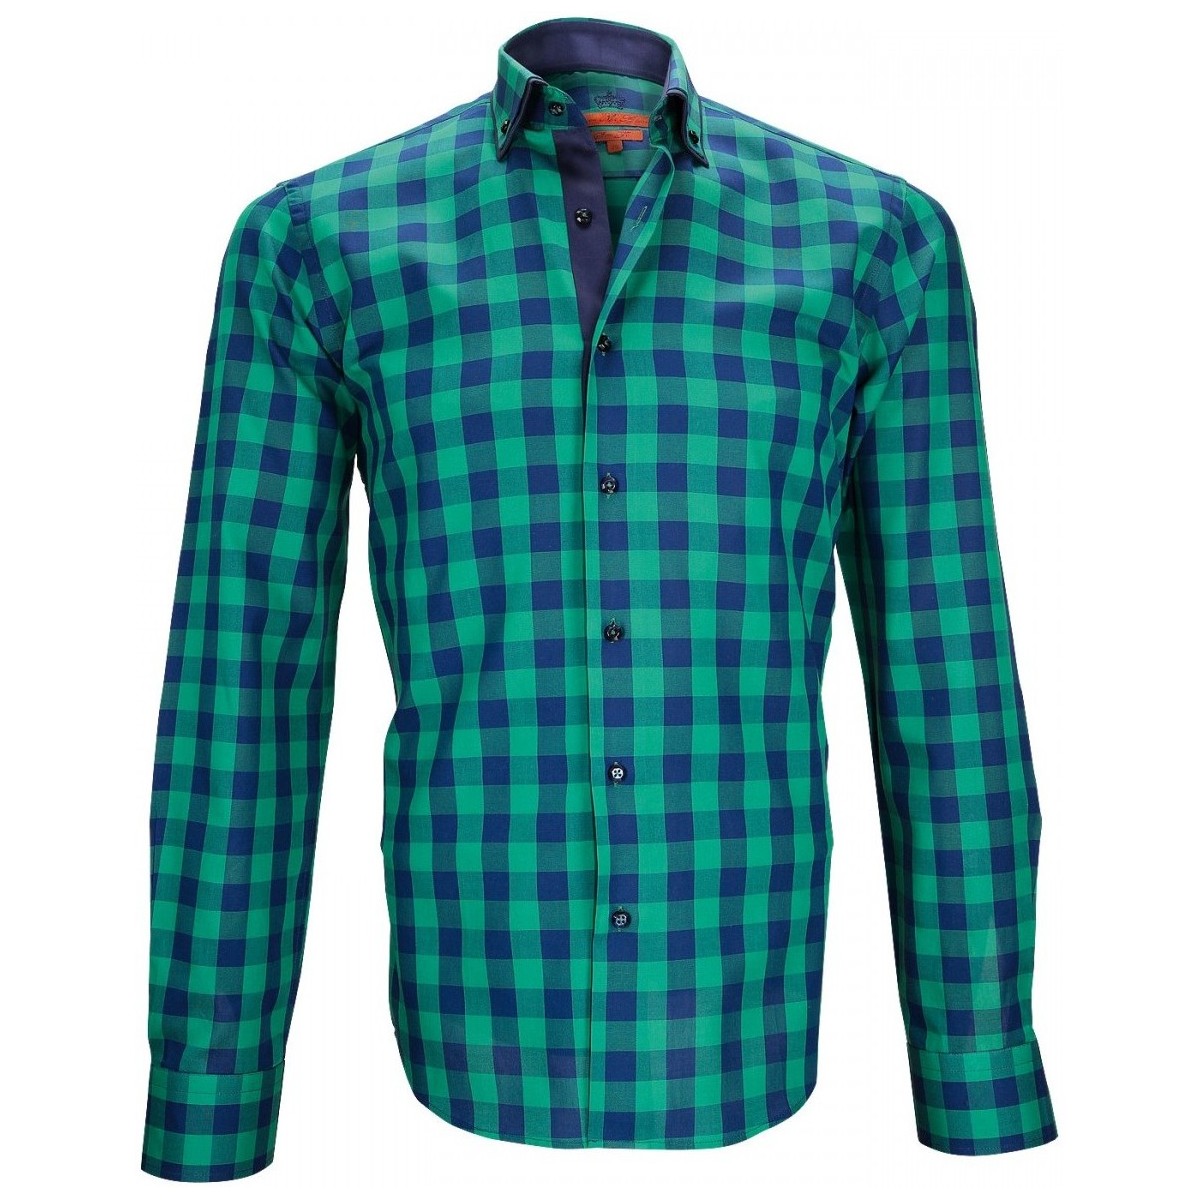 Vêtements Homme Chemises manches courtes Andrew Mc Allister chemise casual devon vert Vert